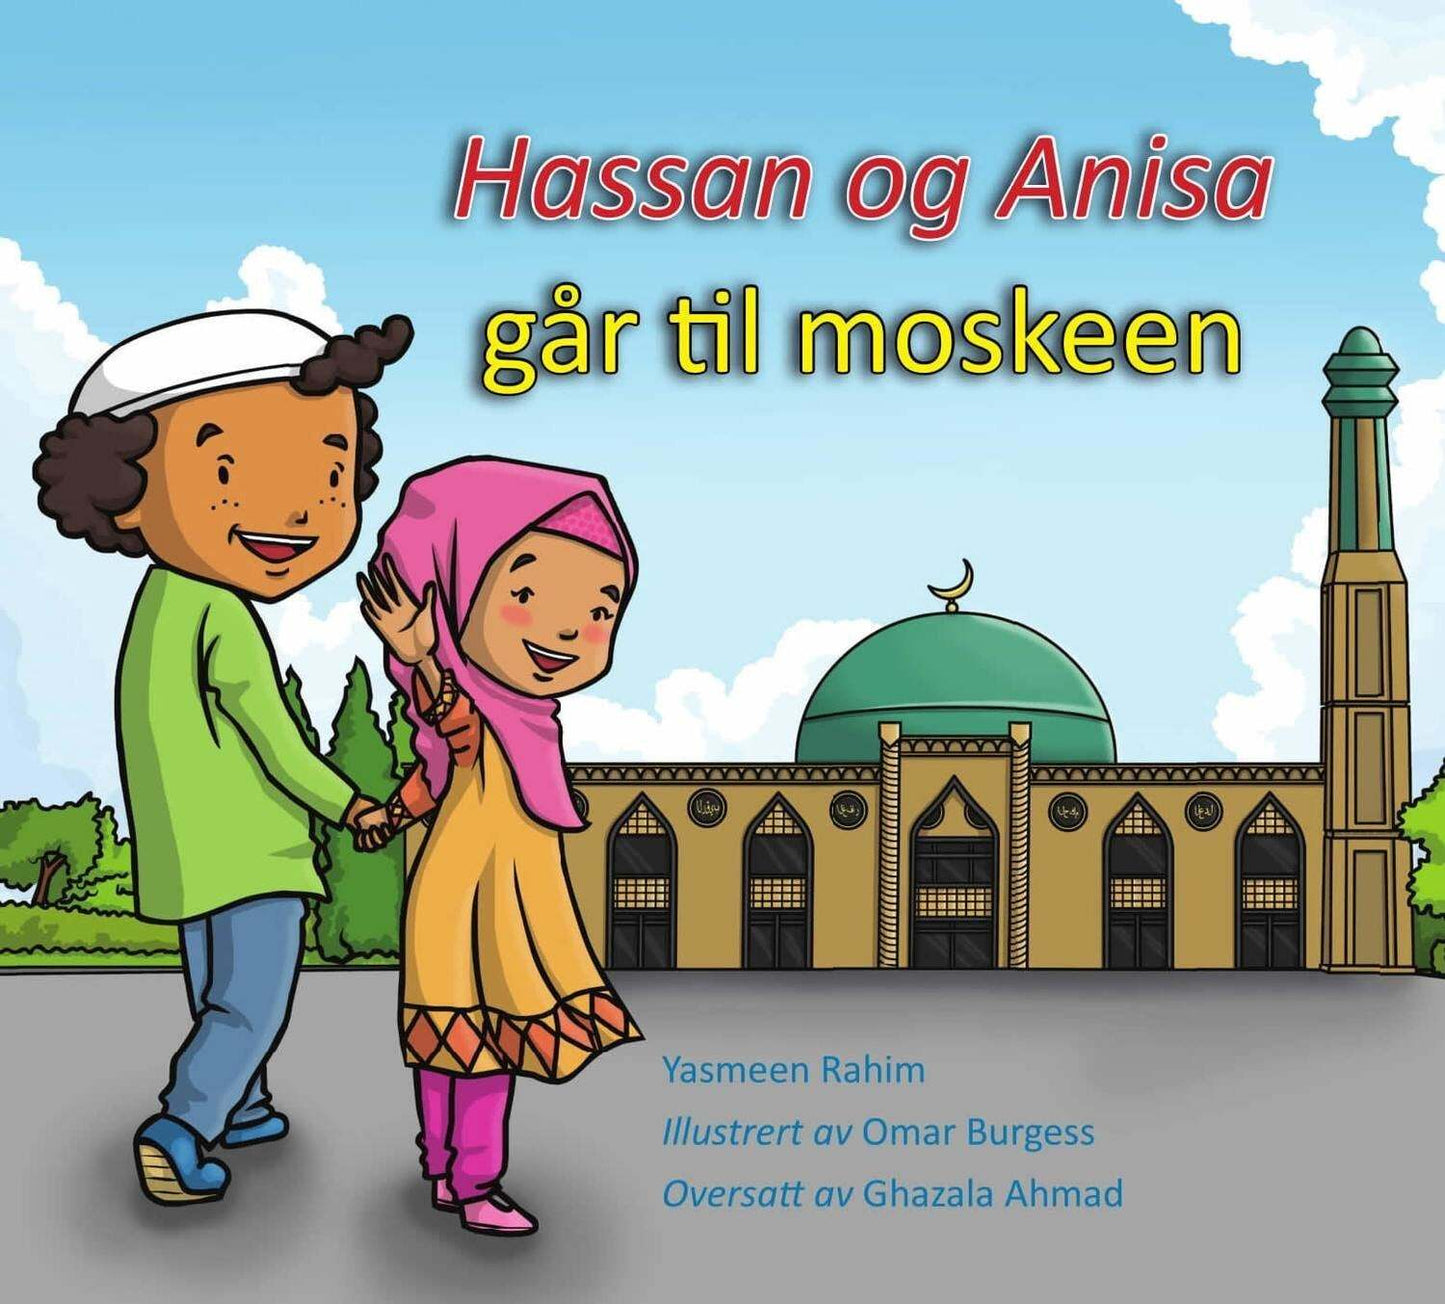 Hassan og Anisa går til moskeen